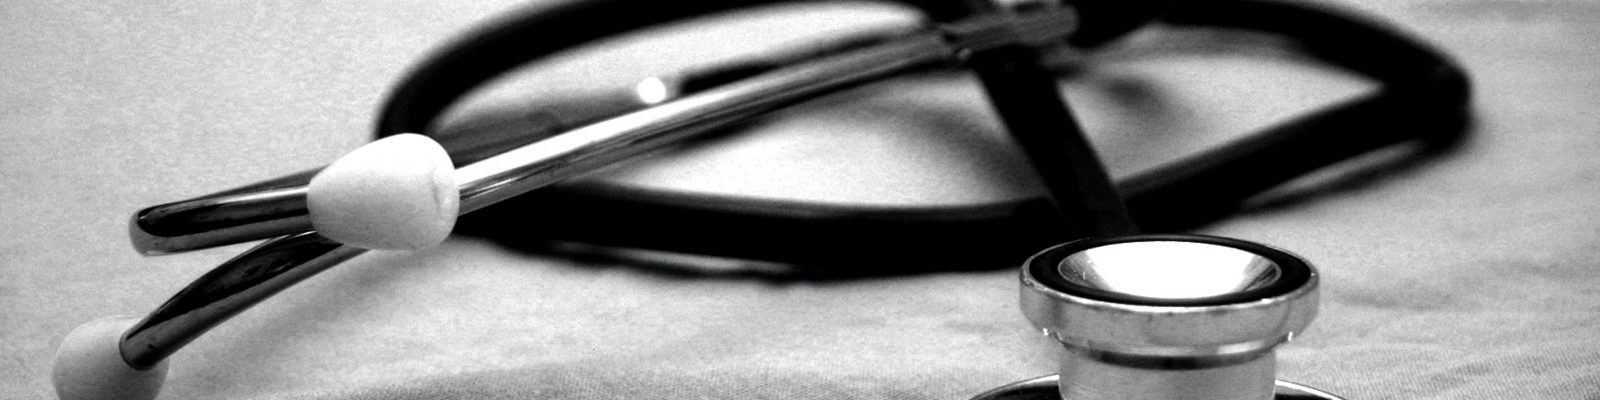 A stethoscope on a grey cloth